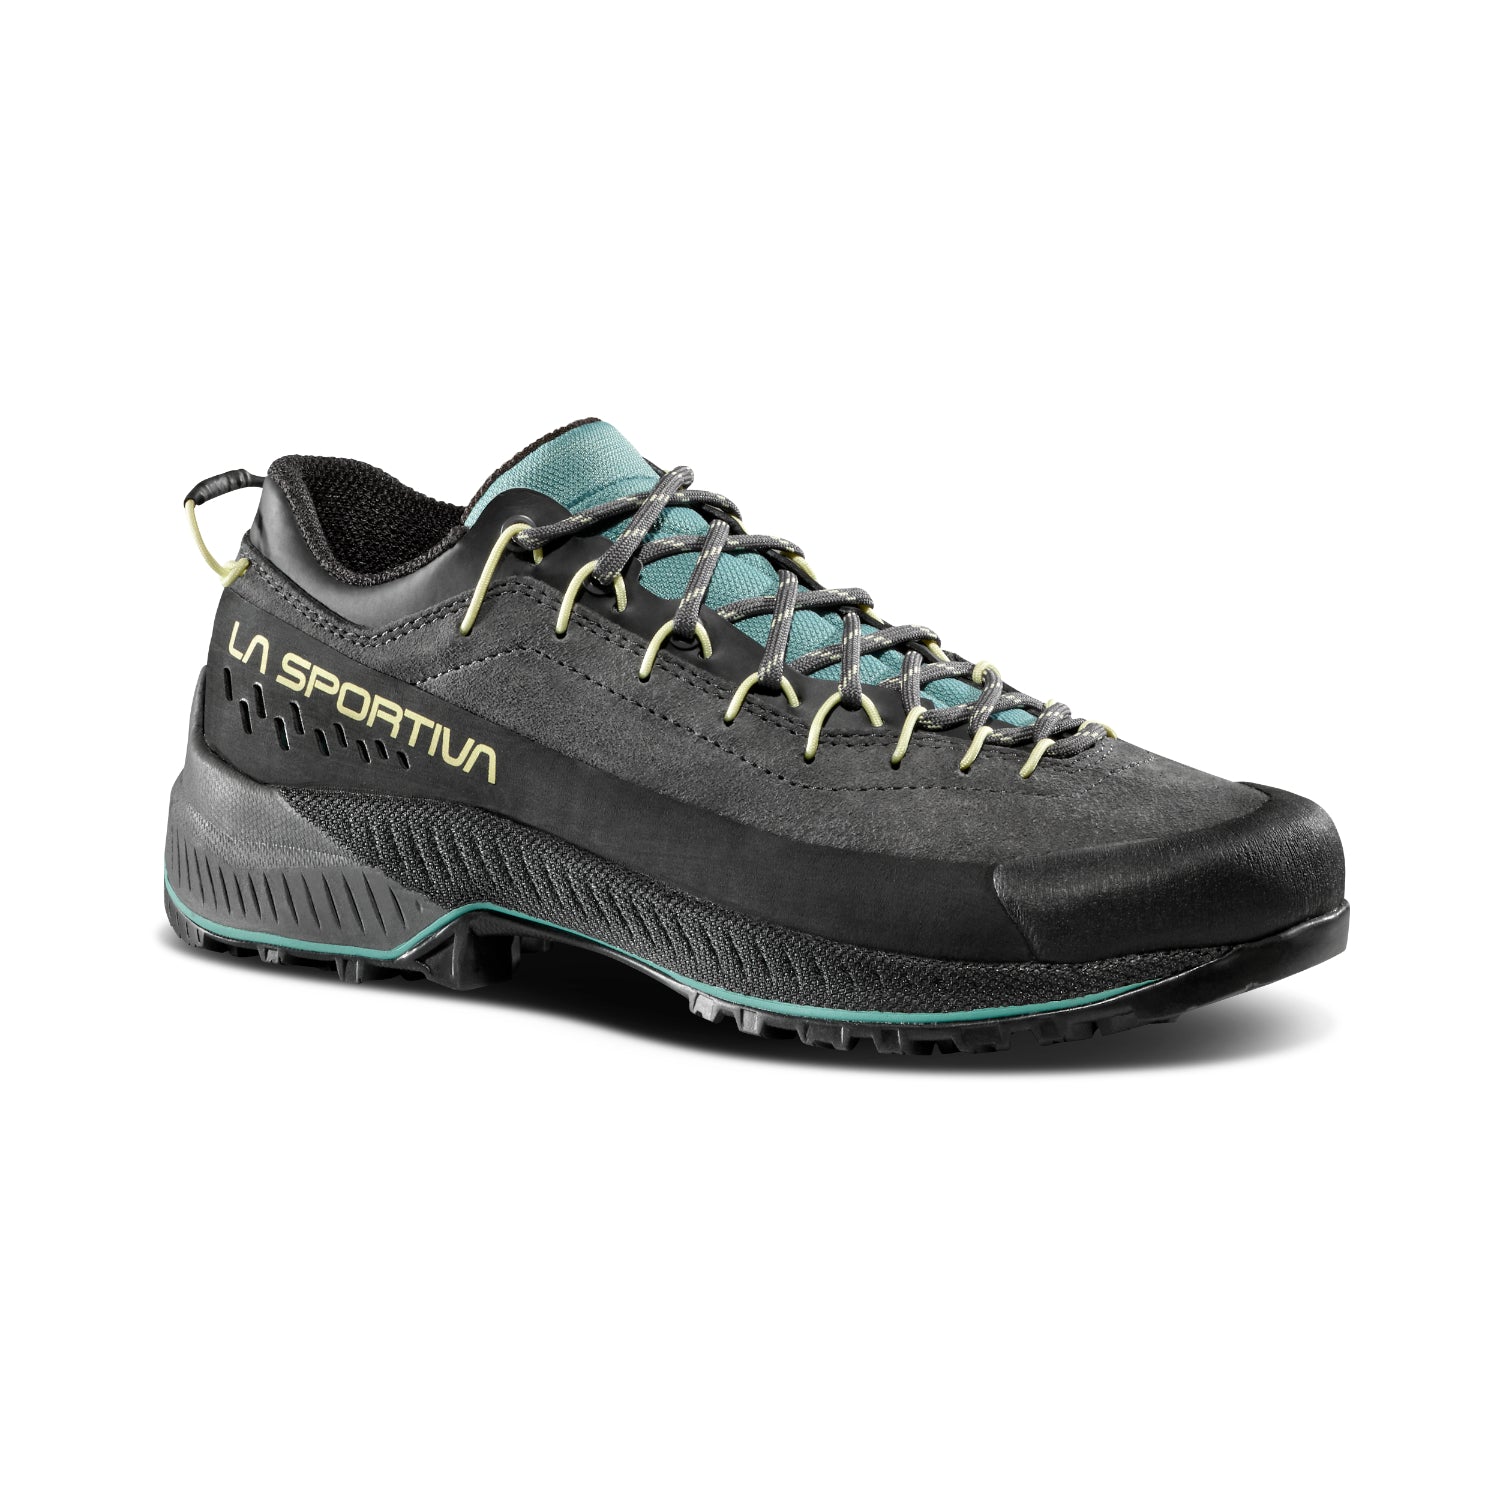 La Sportiva TX4 Evo - Womens apporach shoes in carbon zest colour